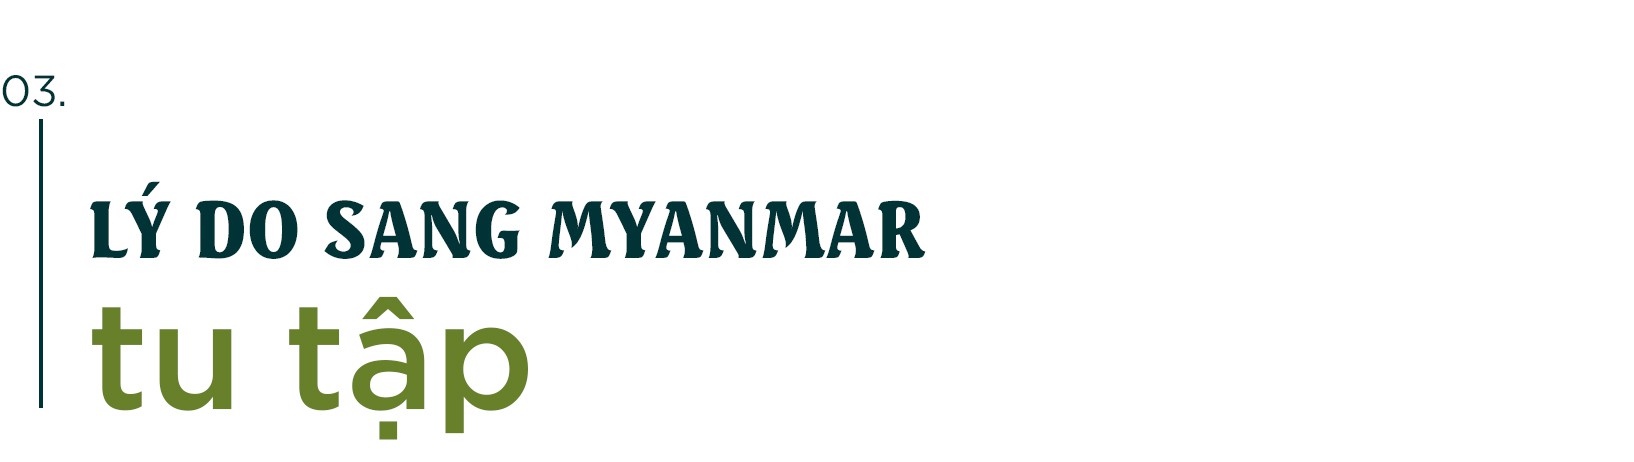 Phỏng vấn KTS Võ Trọng Nghĩa: Kiến trúc xanh và chuyện tu tập ở Myanmar - ảnh 8